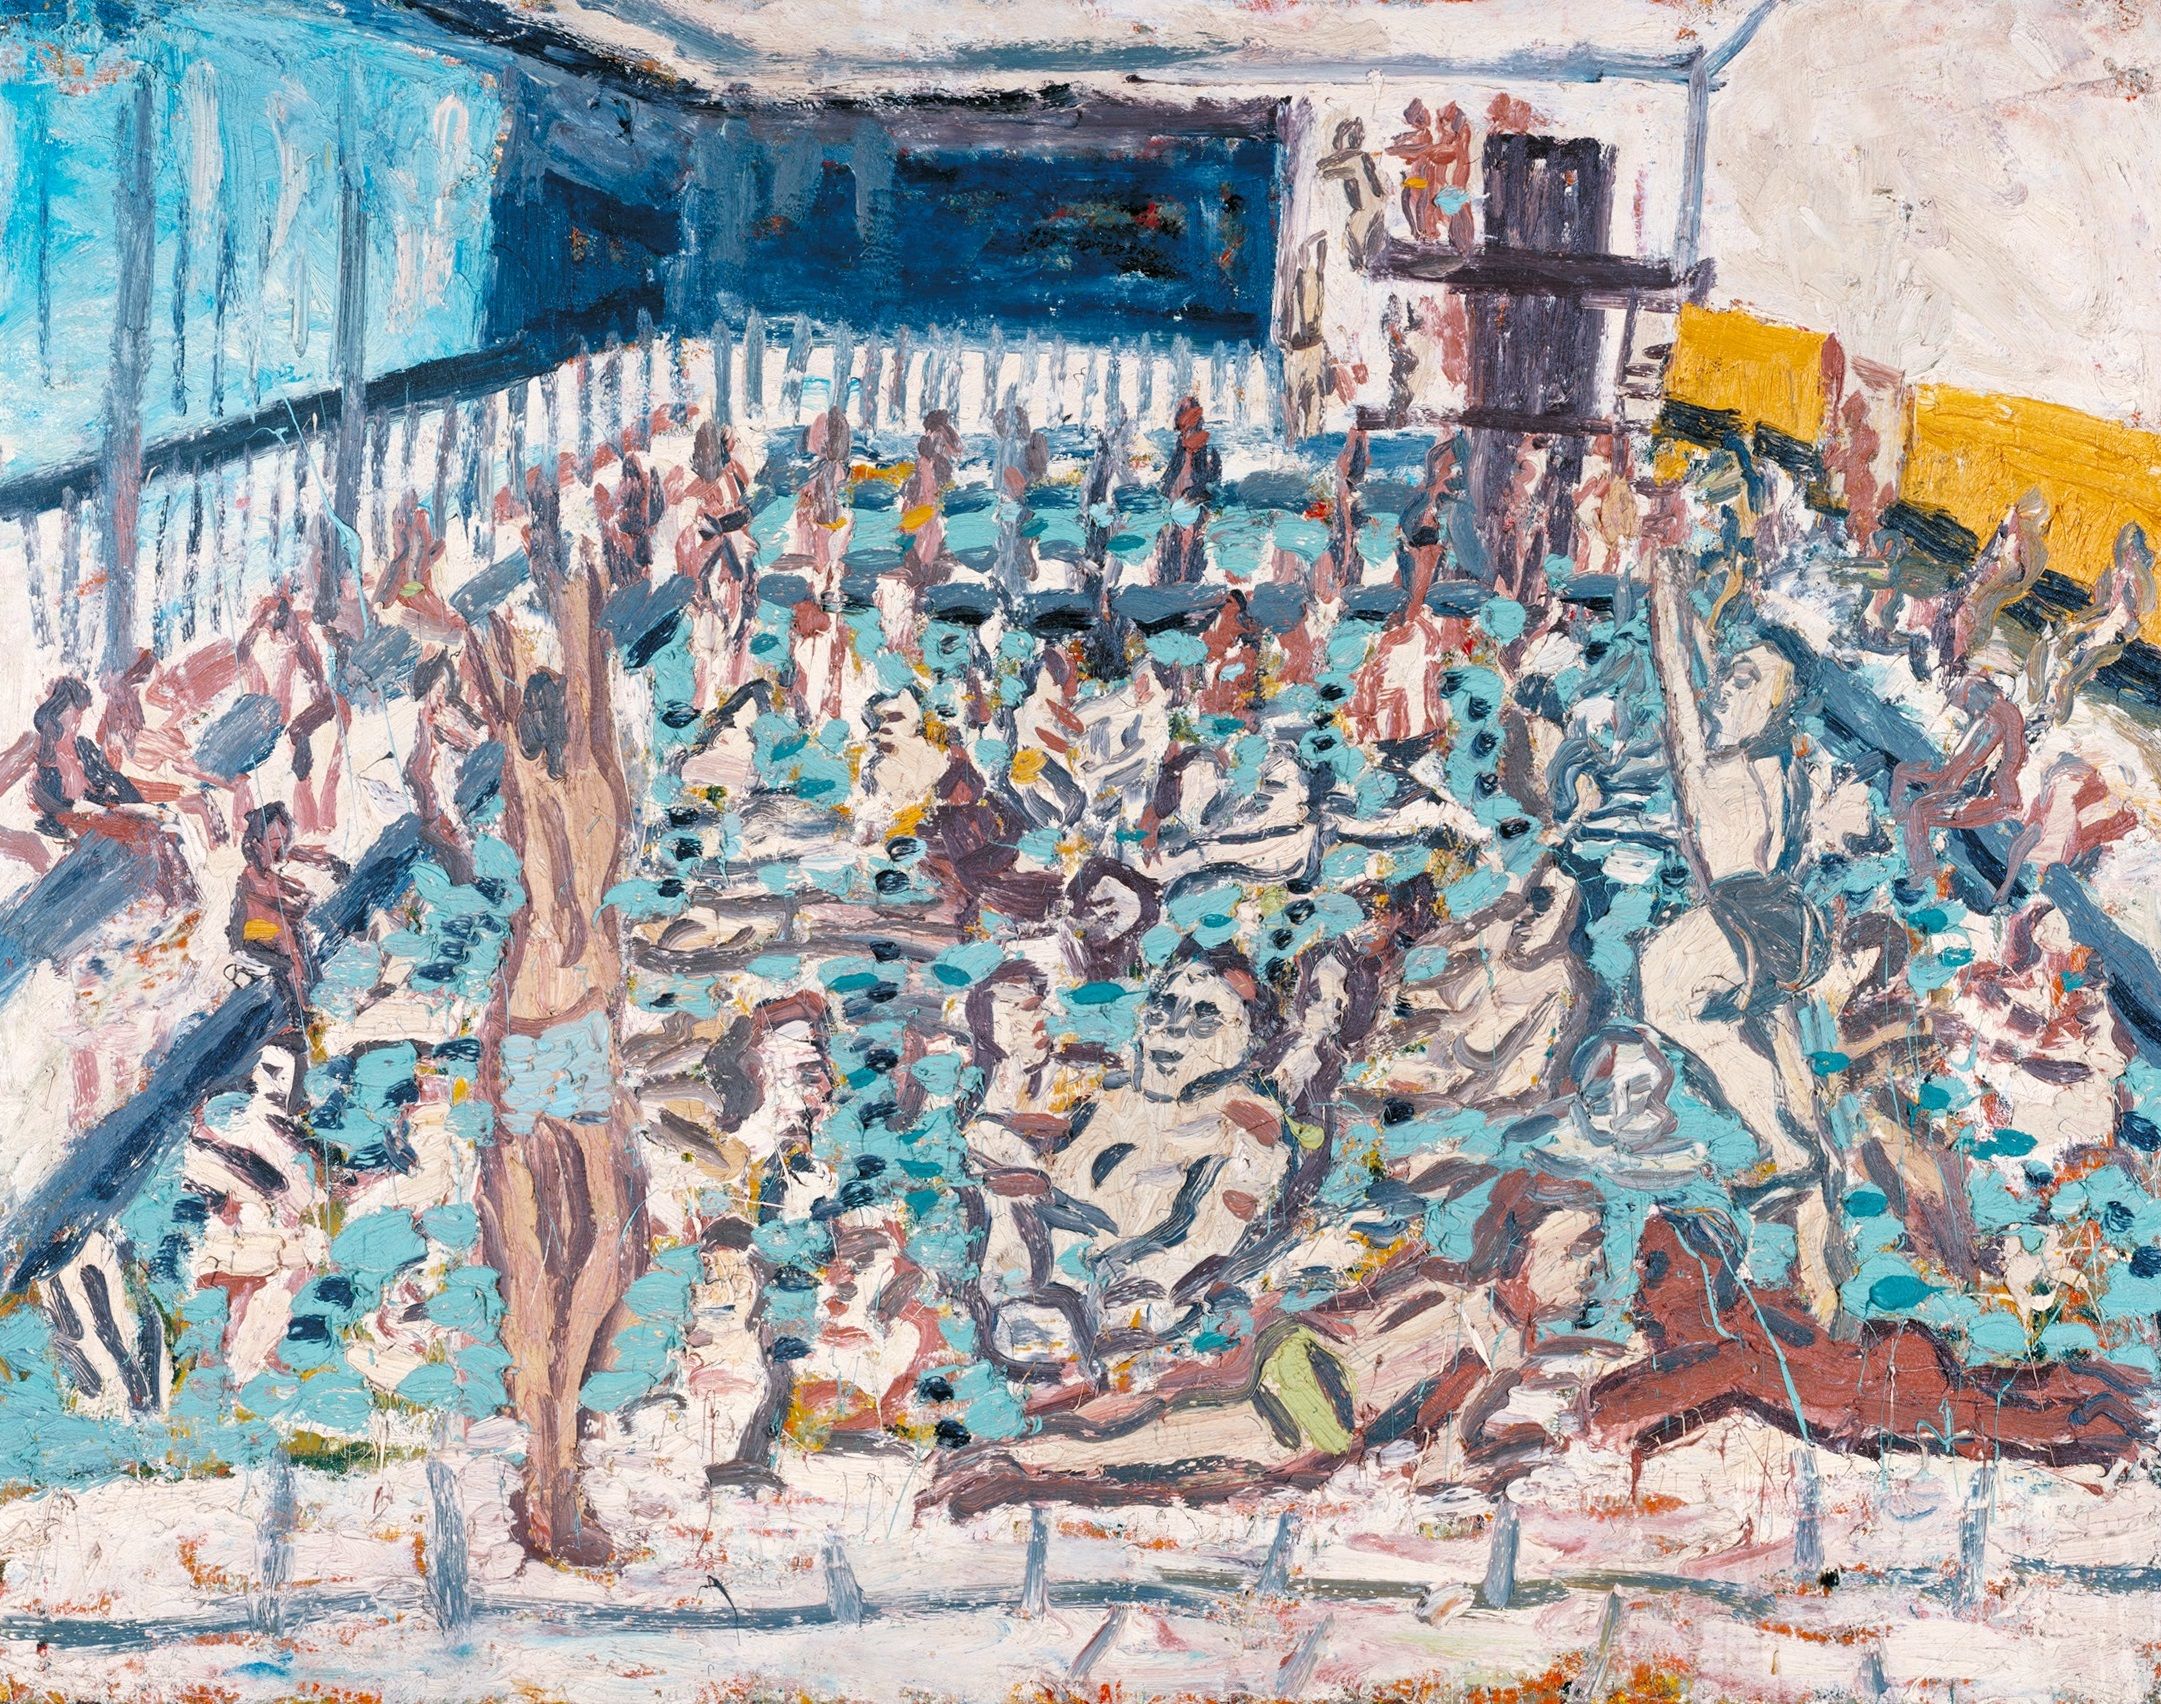 Leon Kossoff, born 1926 Children's Swimming Pool, Autumn Afternoon 1971 Oil paint on board 1680 x 2140 x 56 mm Tate © Leon Kossoff